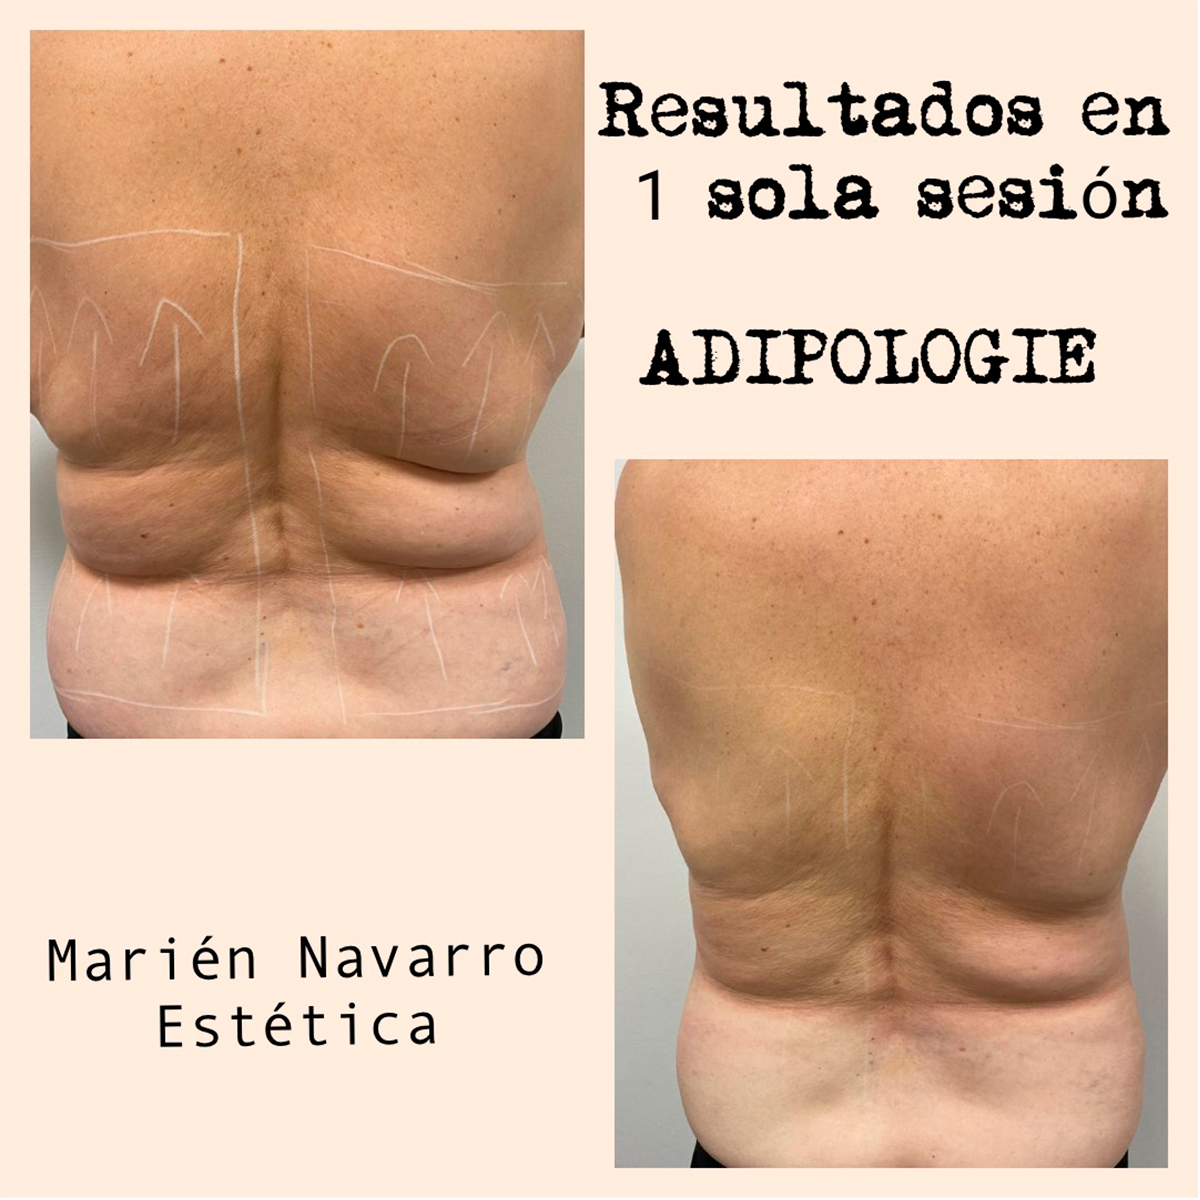 Resultado tratamiento Adipologie Marién Navarro Estética